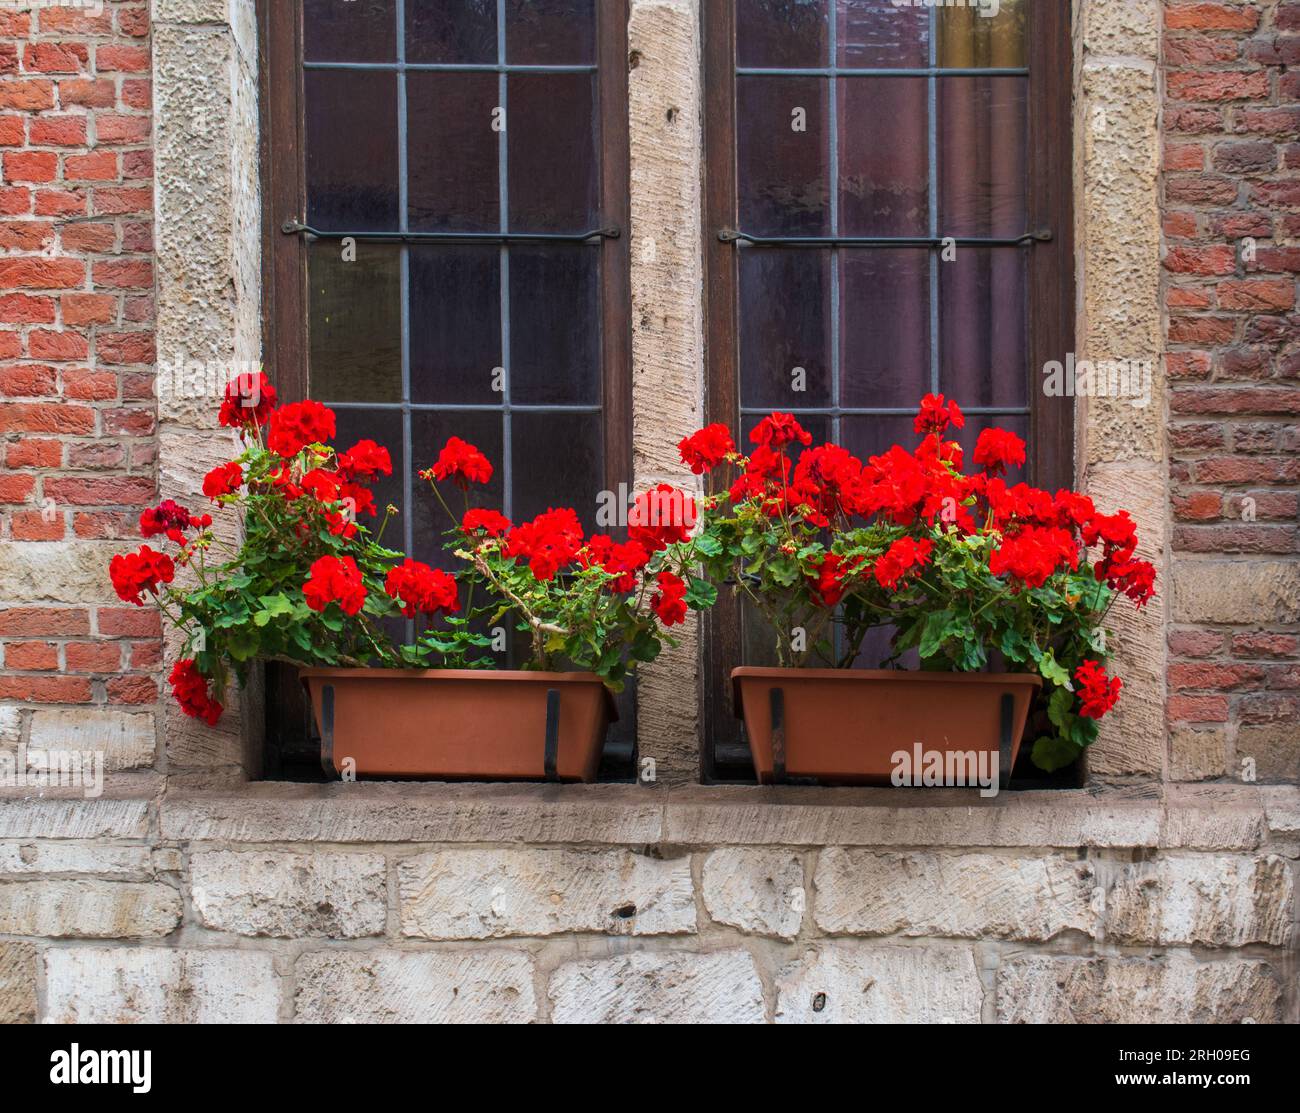 Jardinières de géraniums rouges sur le balcon d'un bâtiment en briques Banque D'Images